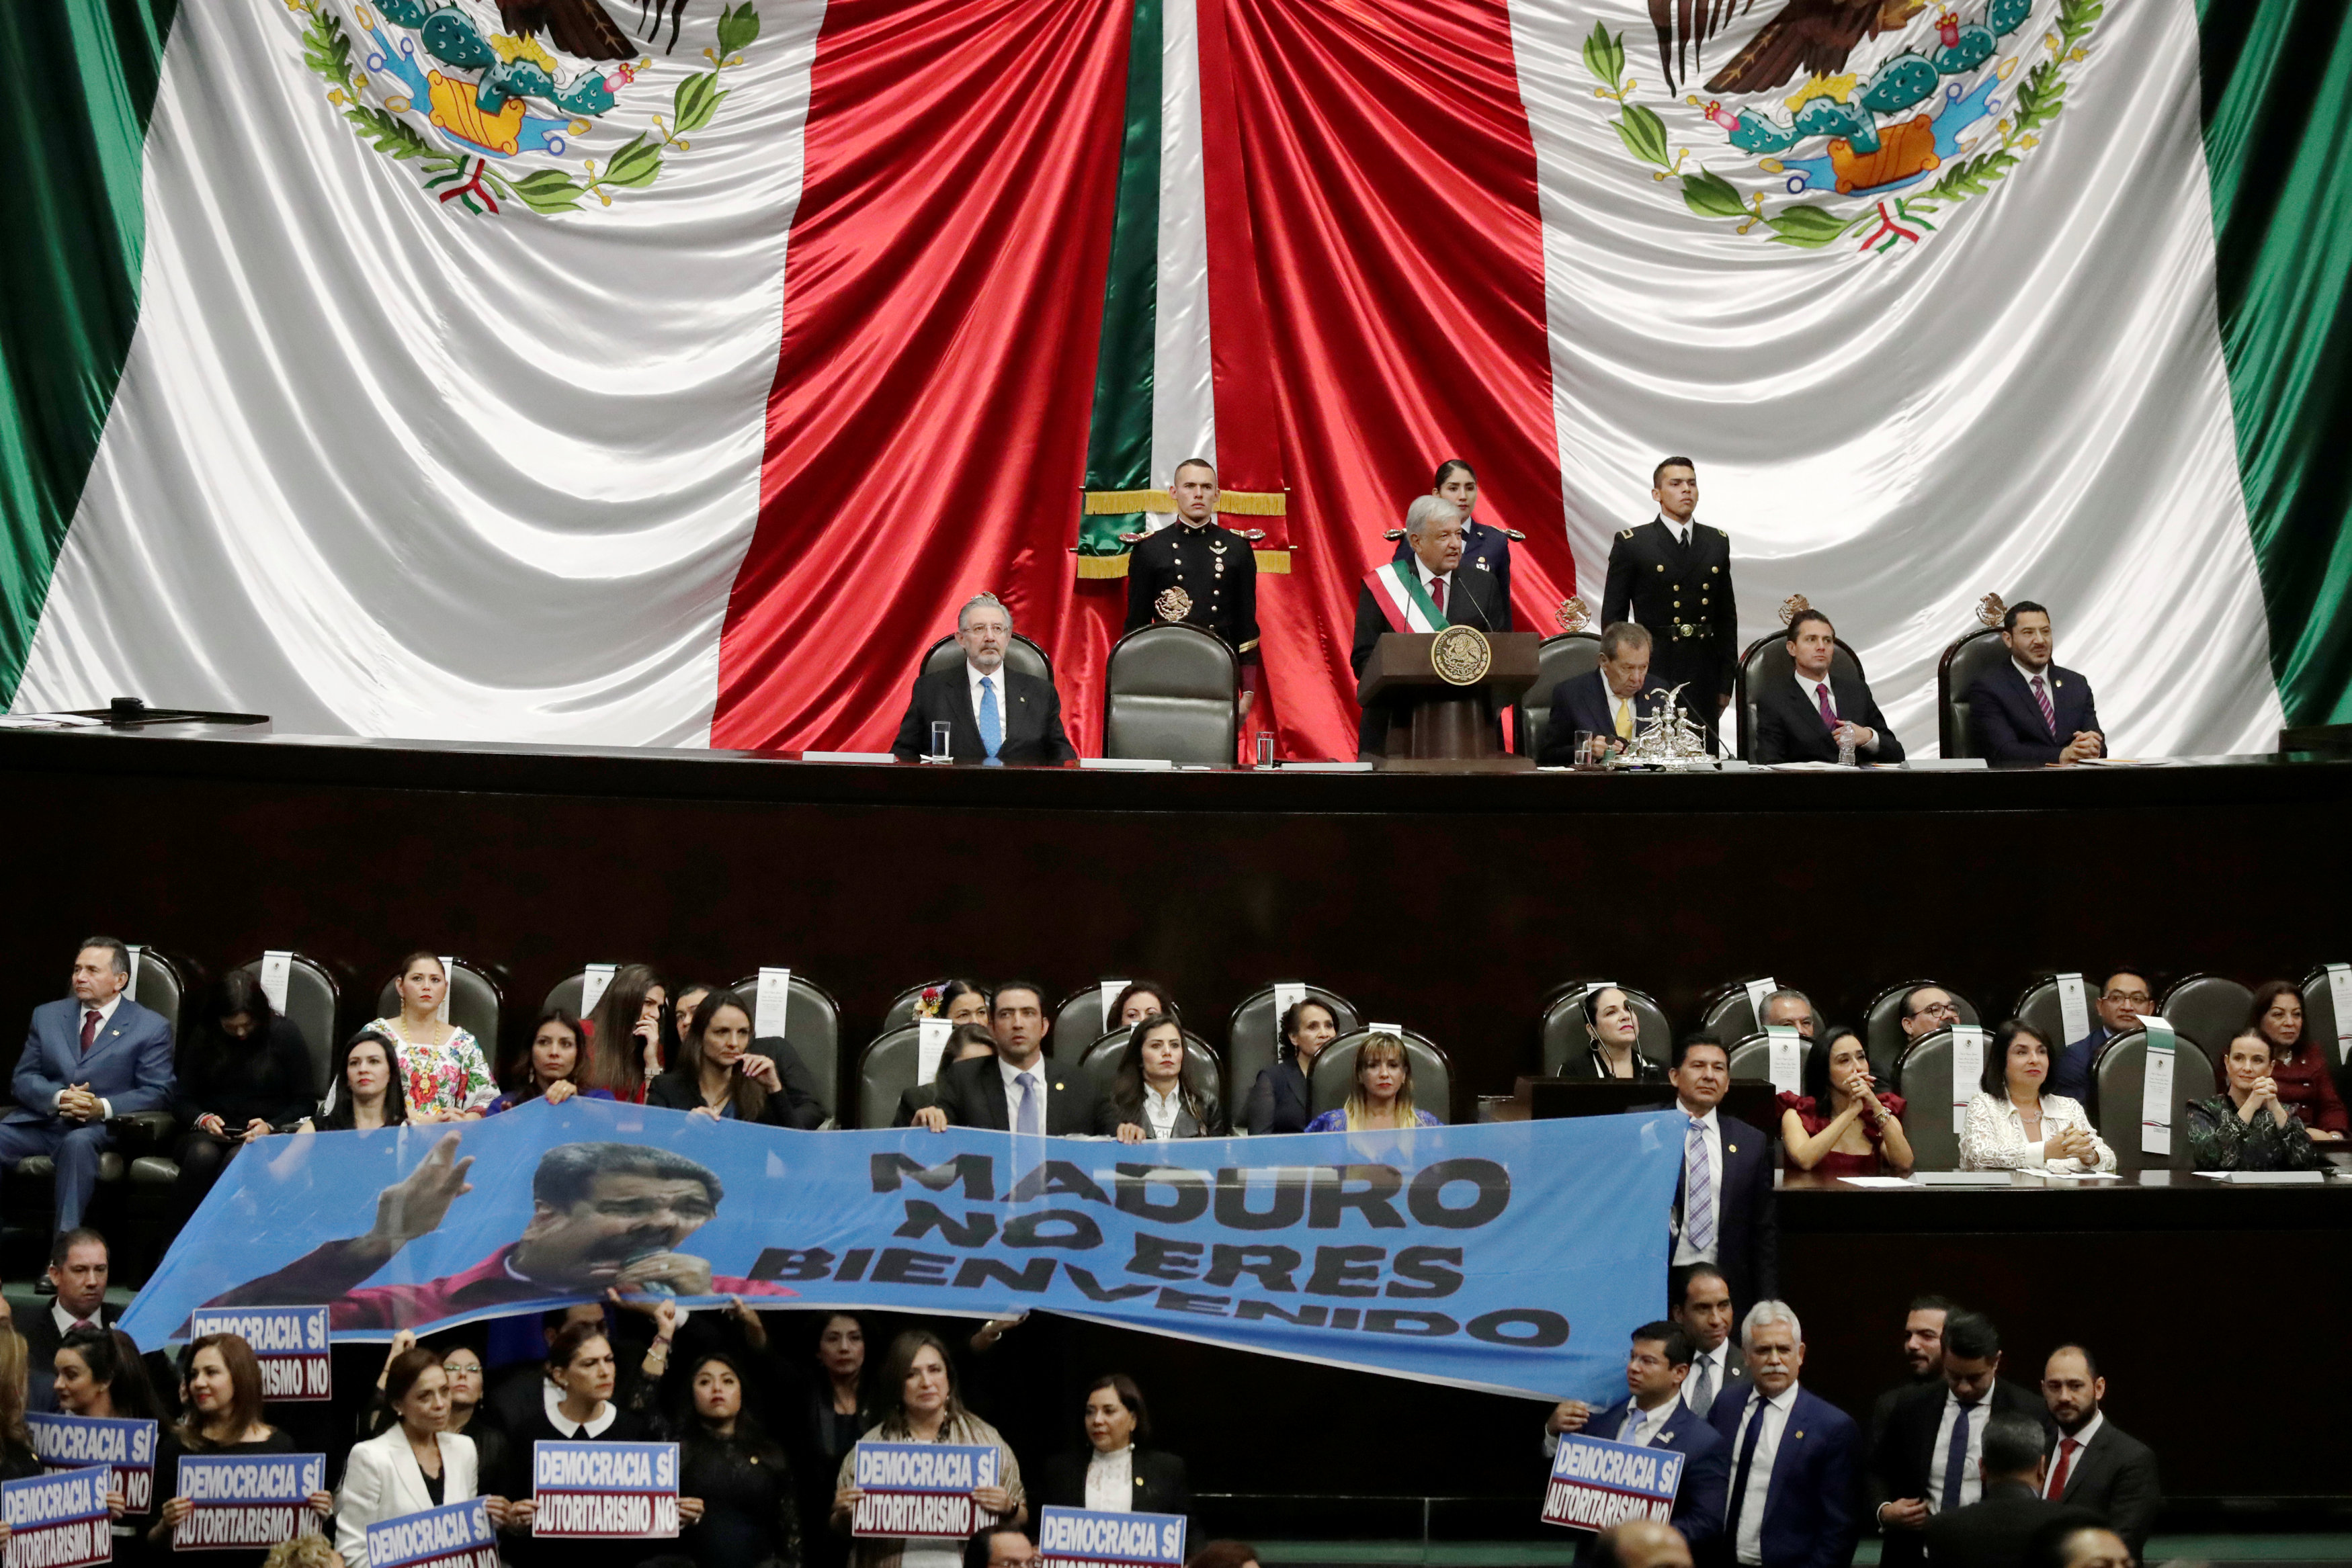 Al grito de “¡Dictador!” rechazan a Nicolás Maduro en el Congreso de México (Video+Pancarta)